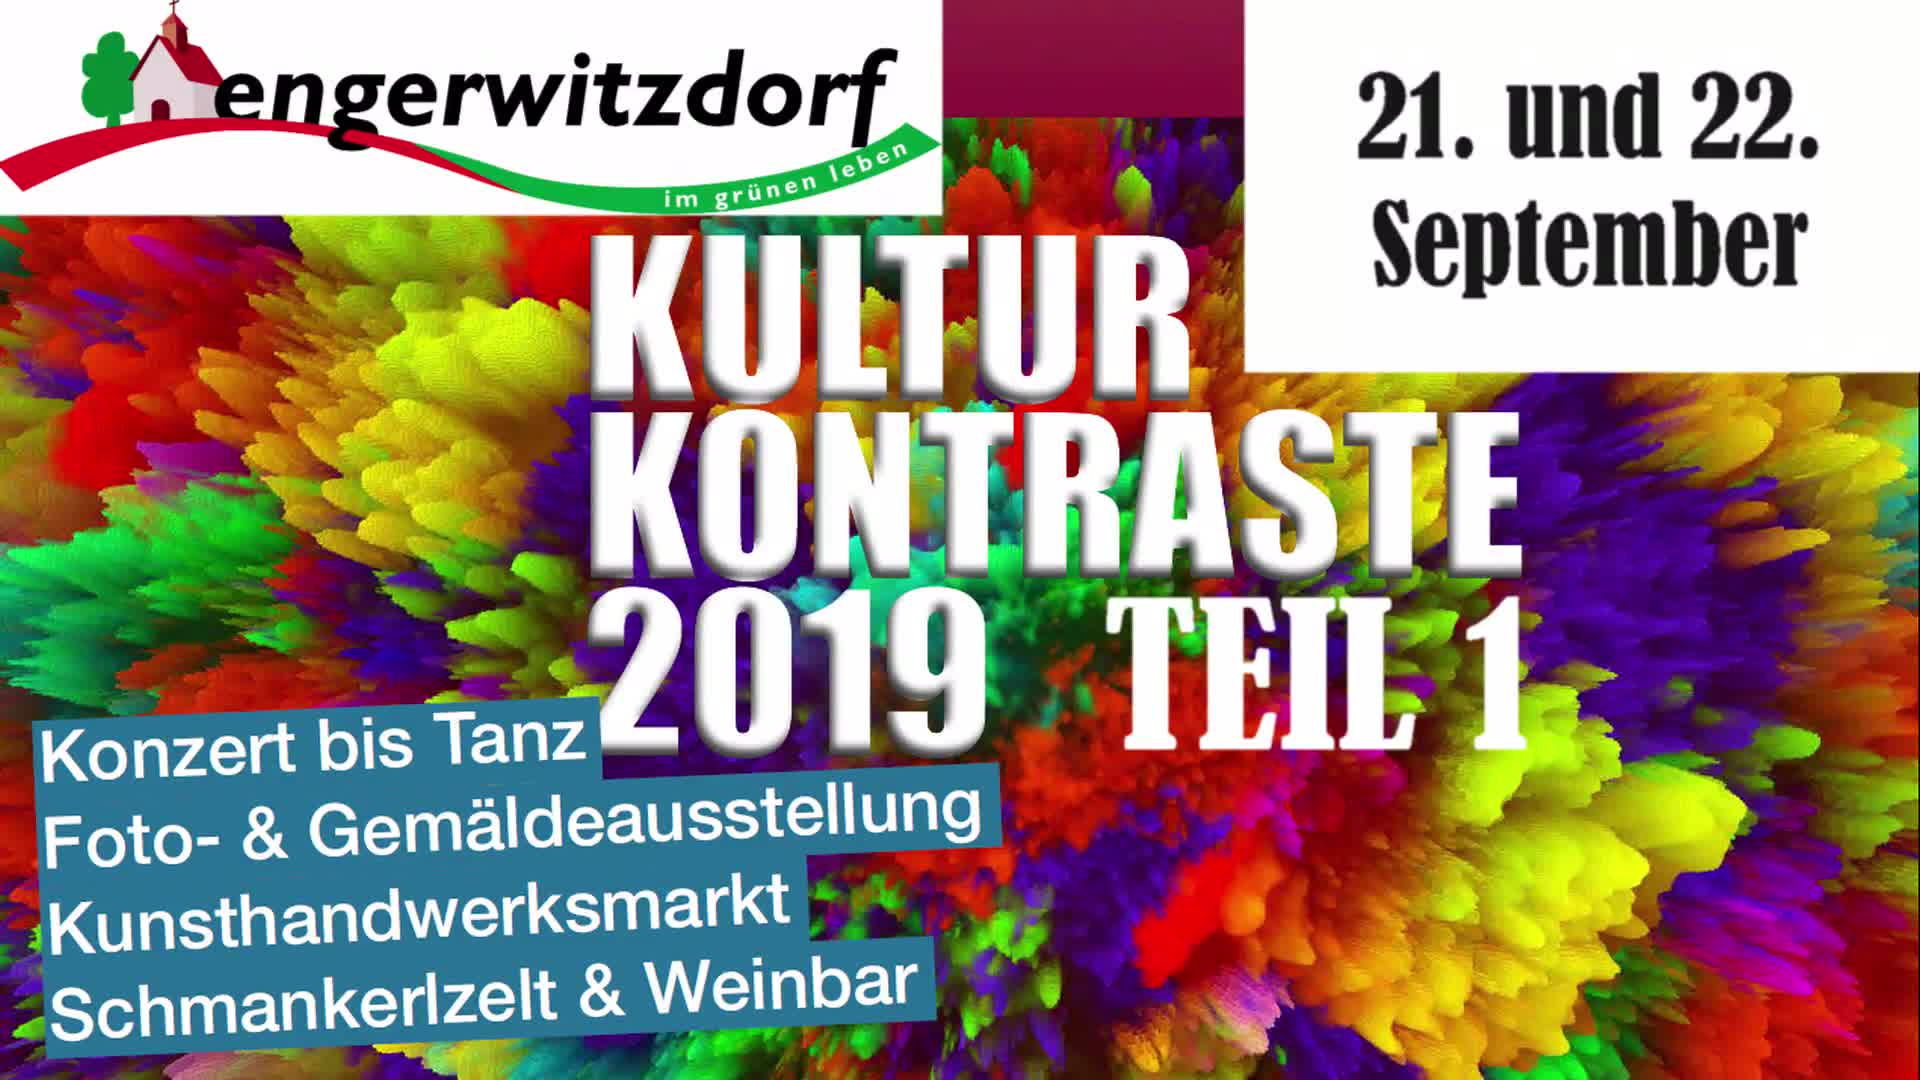 Kulturkontraste Engerwitzdorf 2019, Teil 1